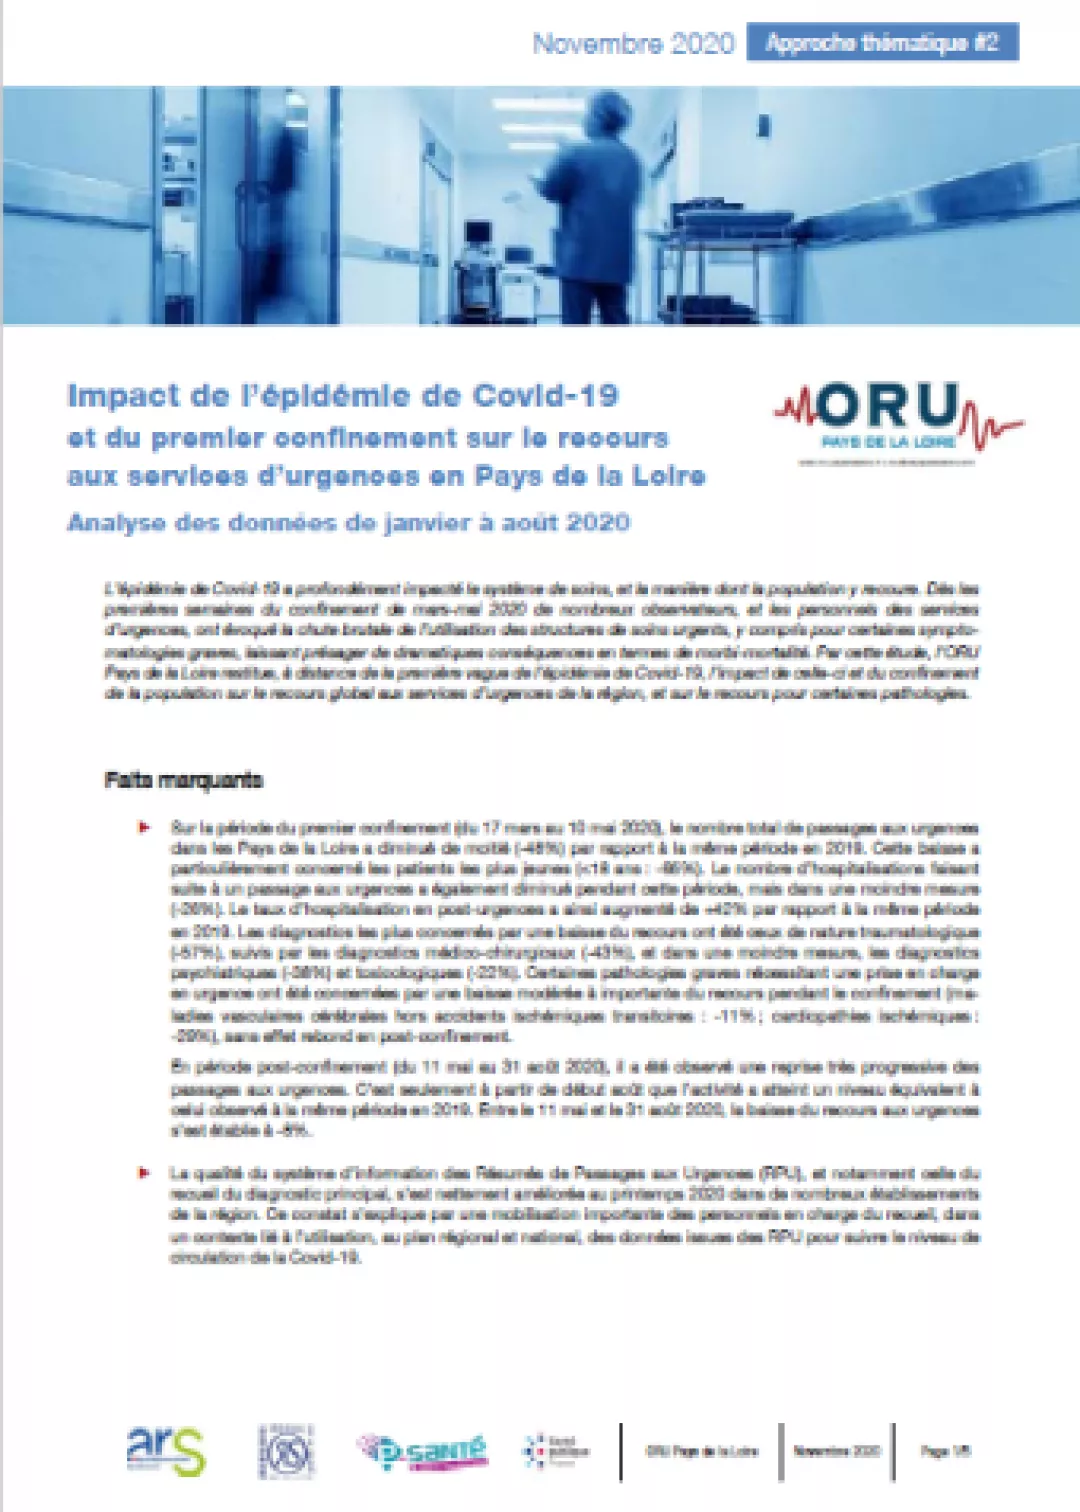 Impact de l'épidémie de Covid-19 et du premier confinement sur le recours aux services d'urgences en Pays de la Loire